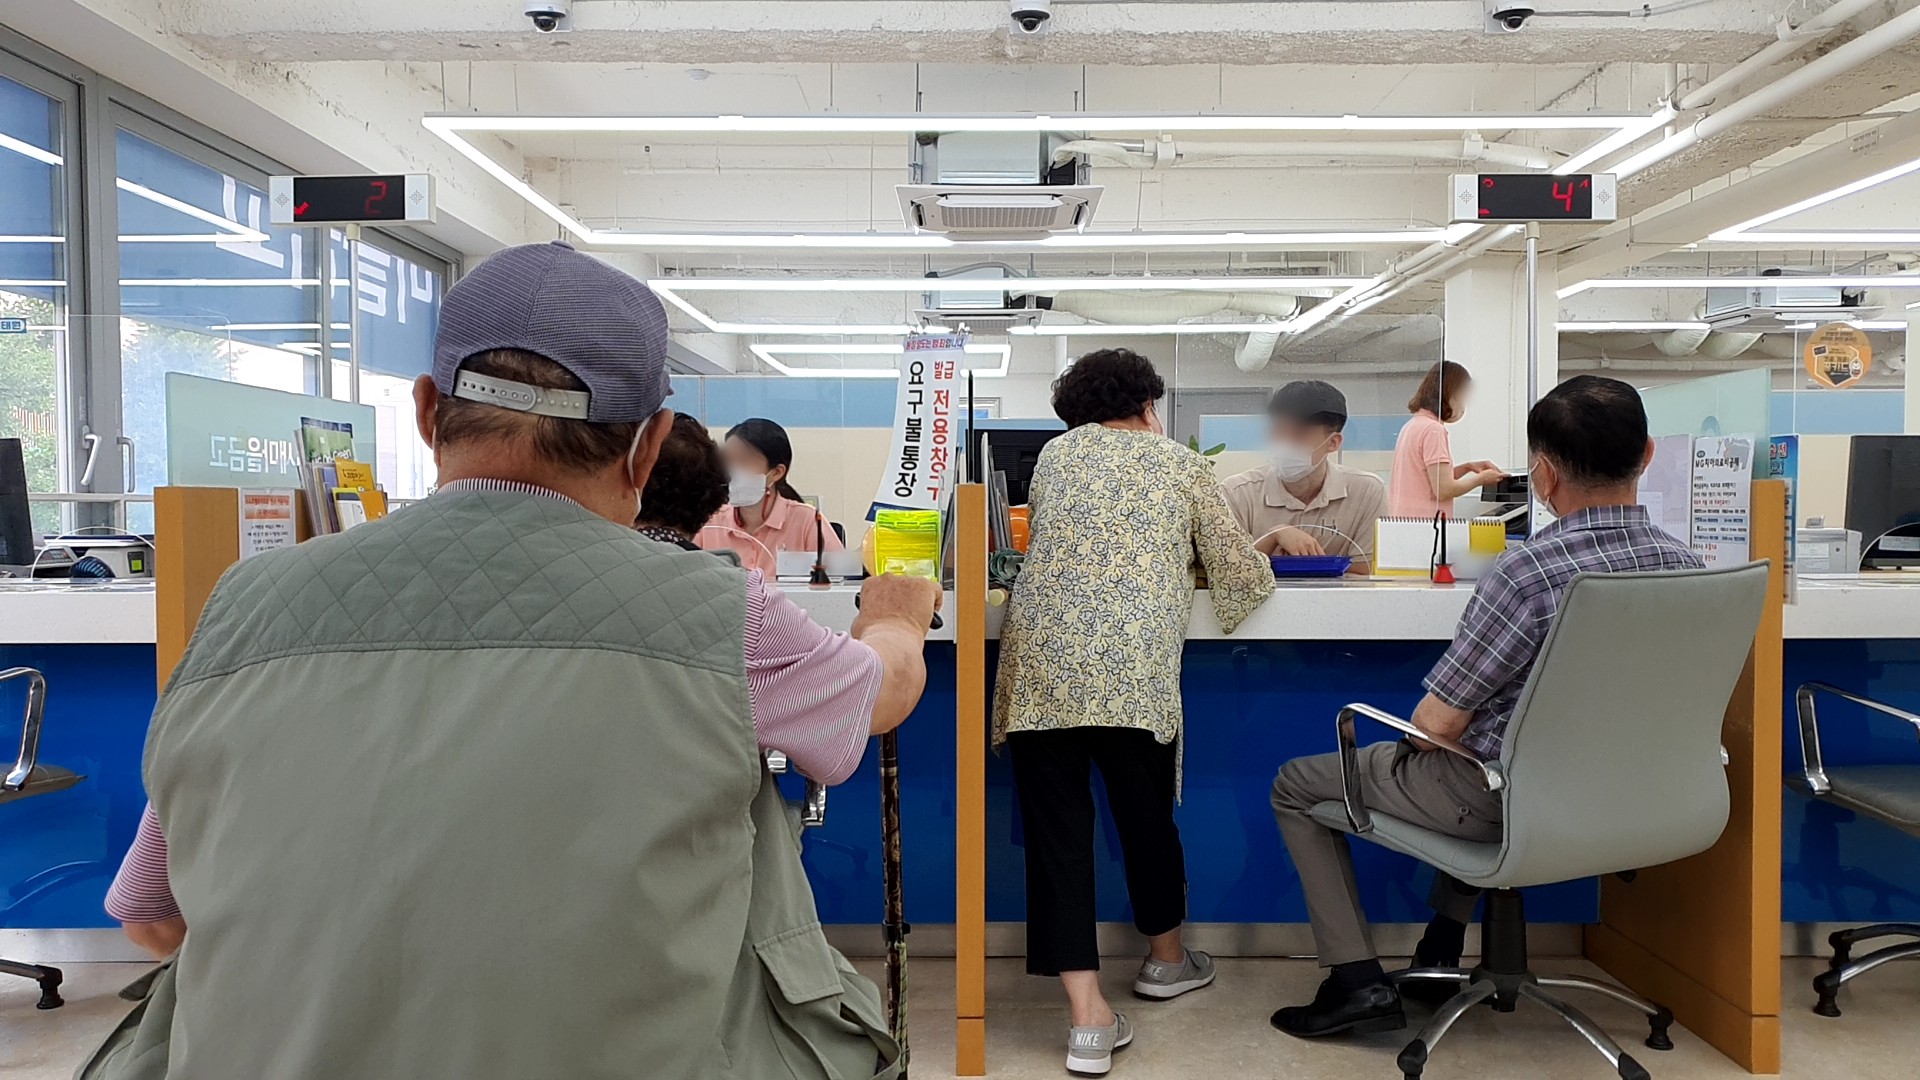 19일 서울의 한 새마을금고에서 고객들이 금융상품에 가입하기 위해 상담을 받고 있다.